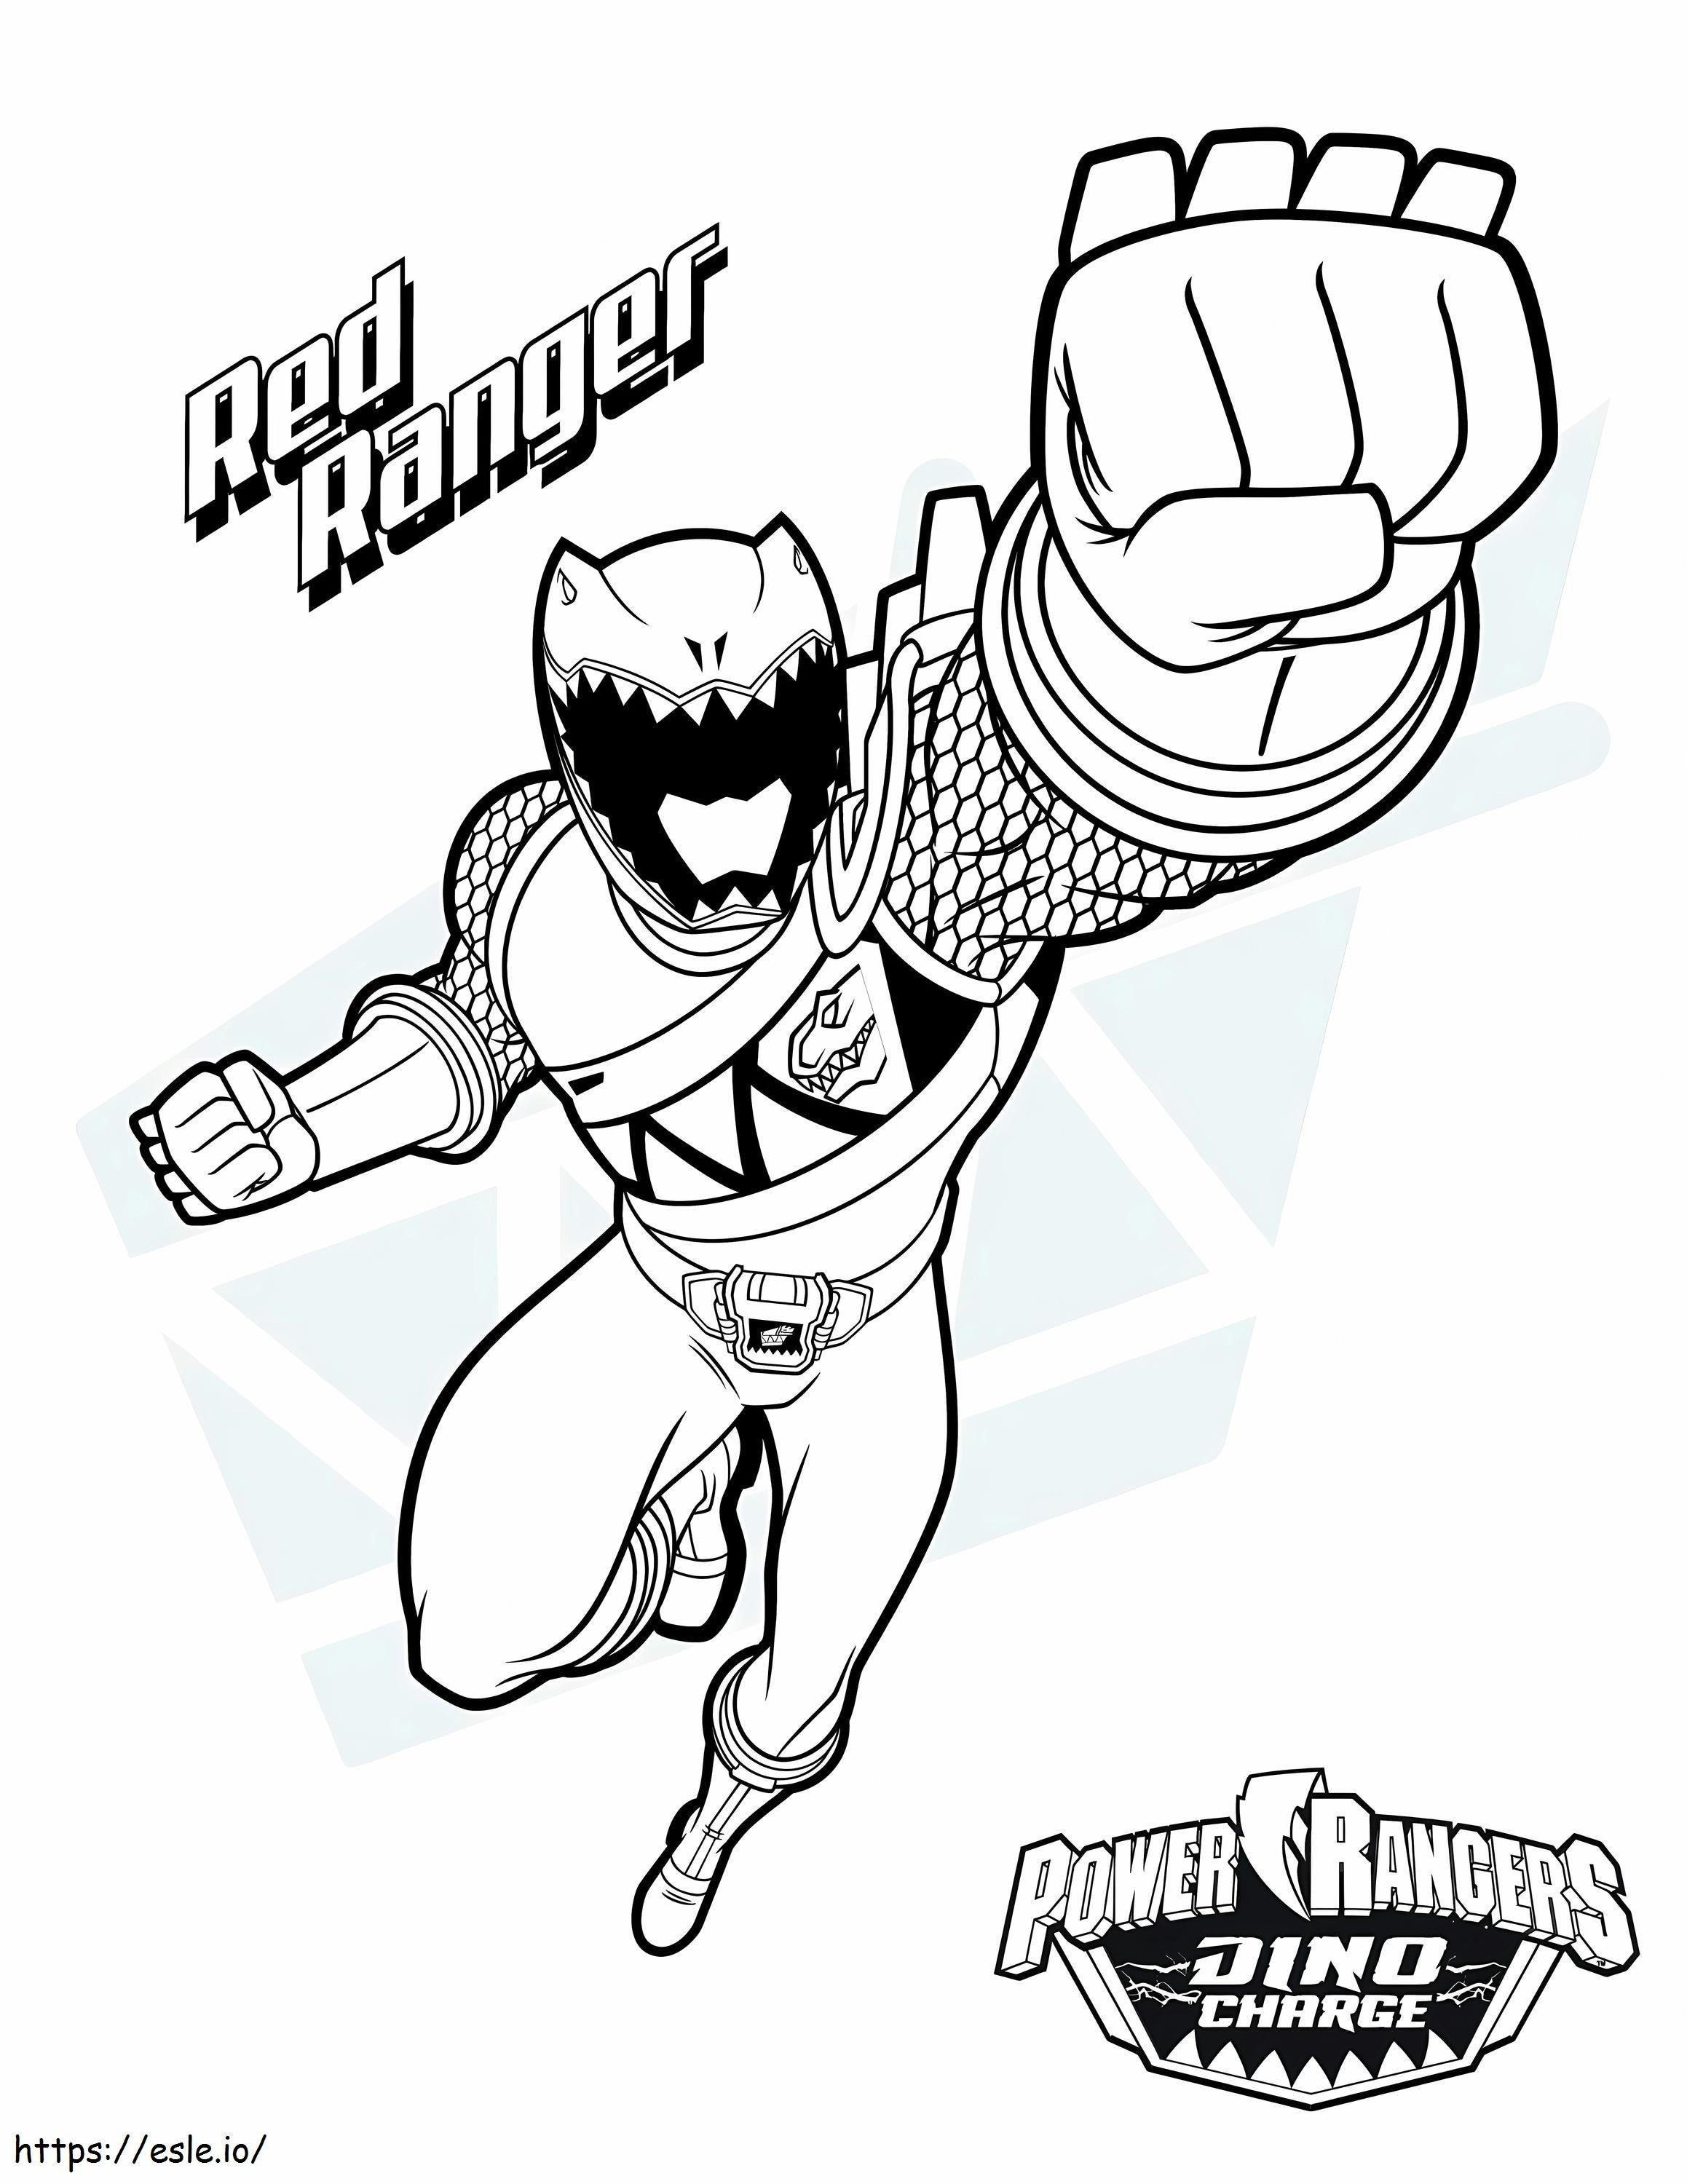  Power Ranger Boyama Kitapları Taze Mighty Morphin Power Rangers Power Ranger Dxj1T boyama